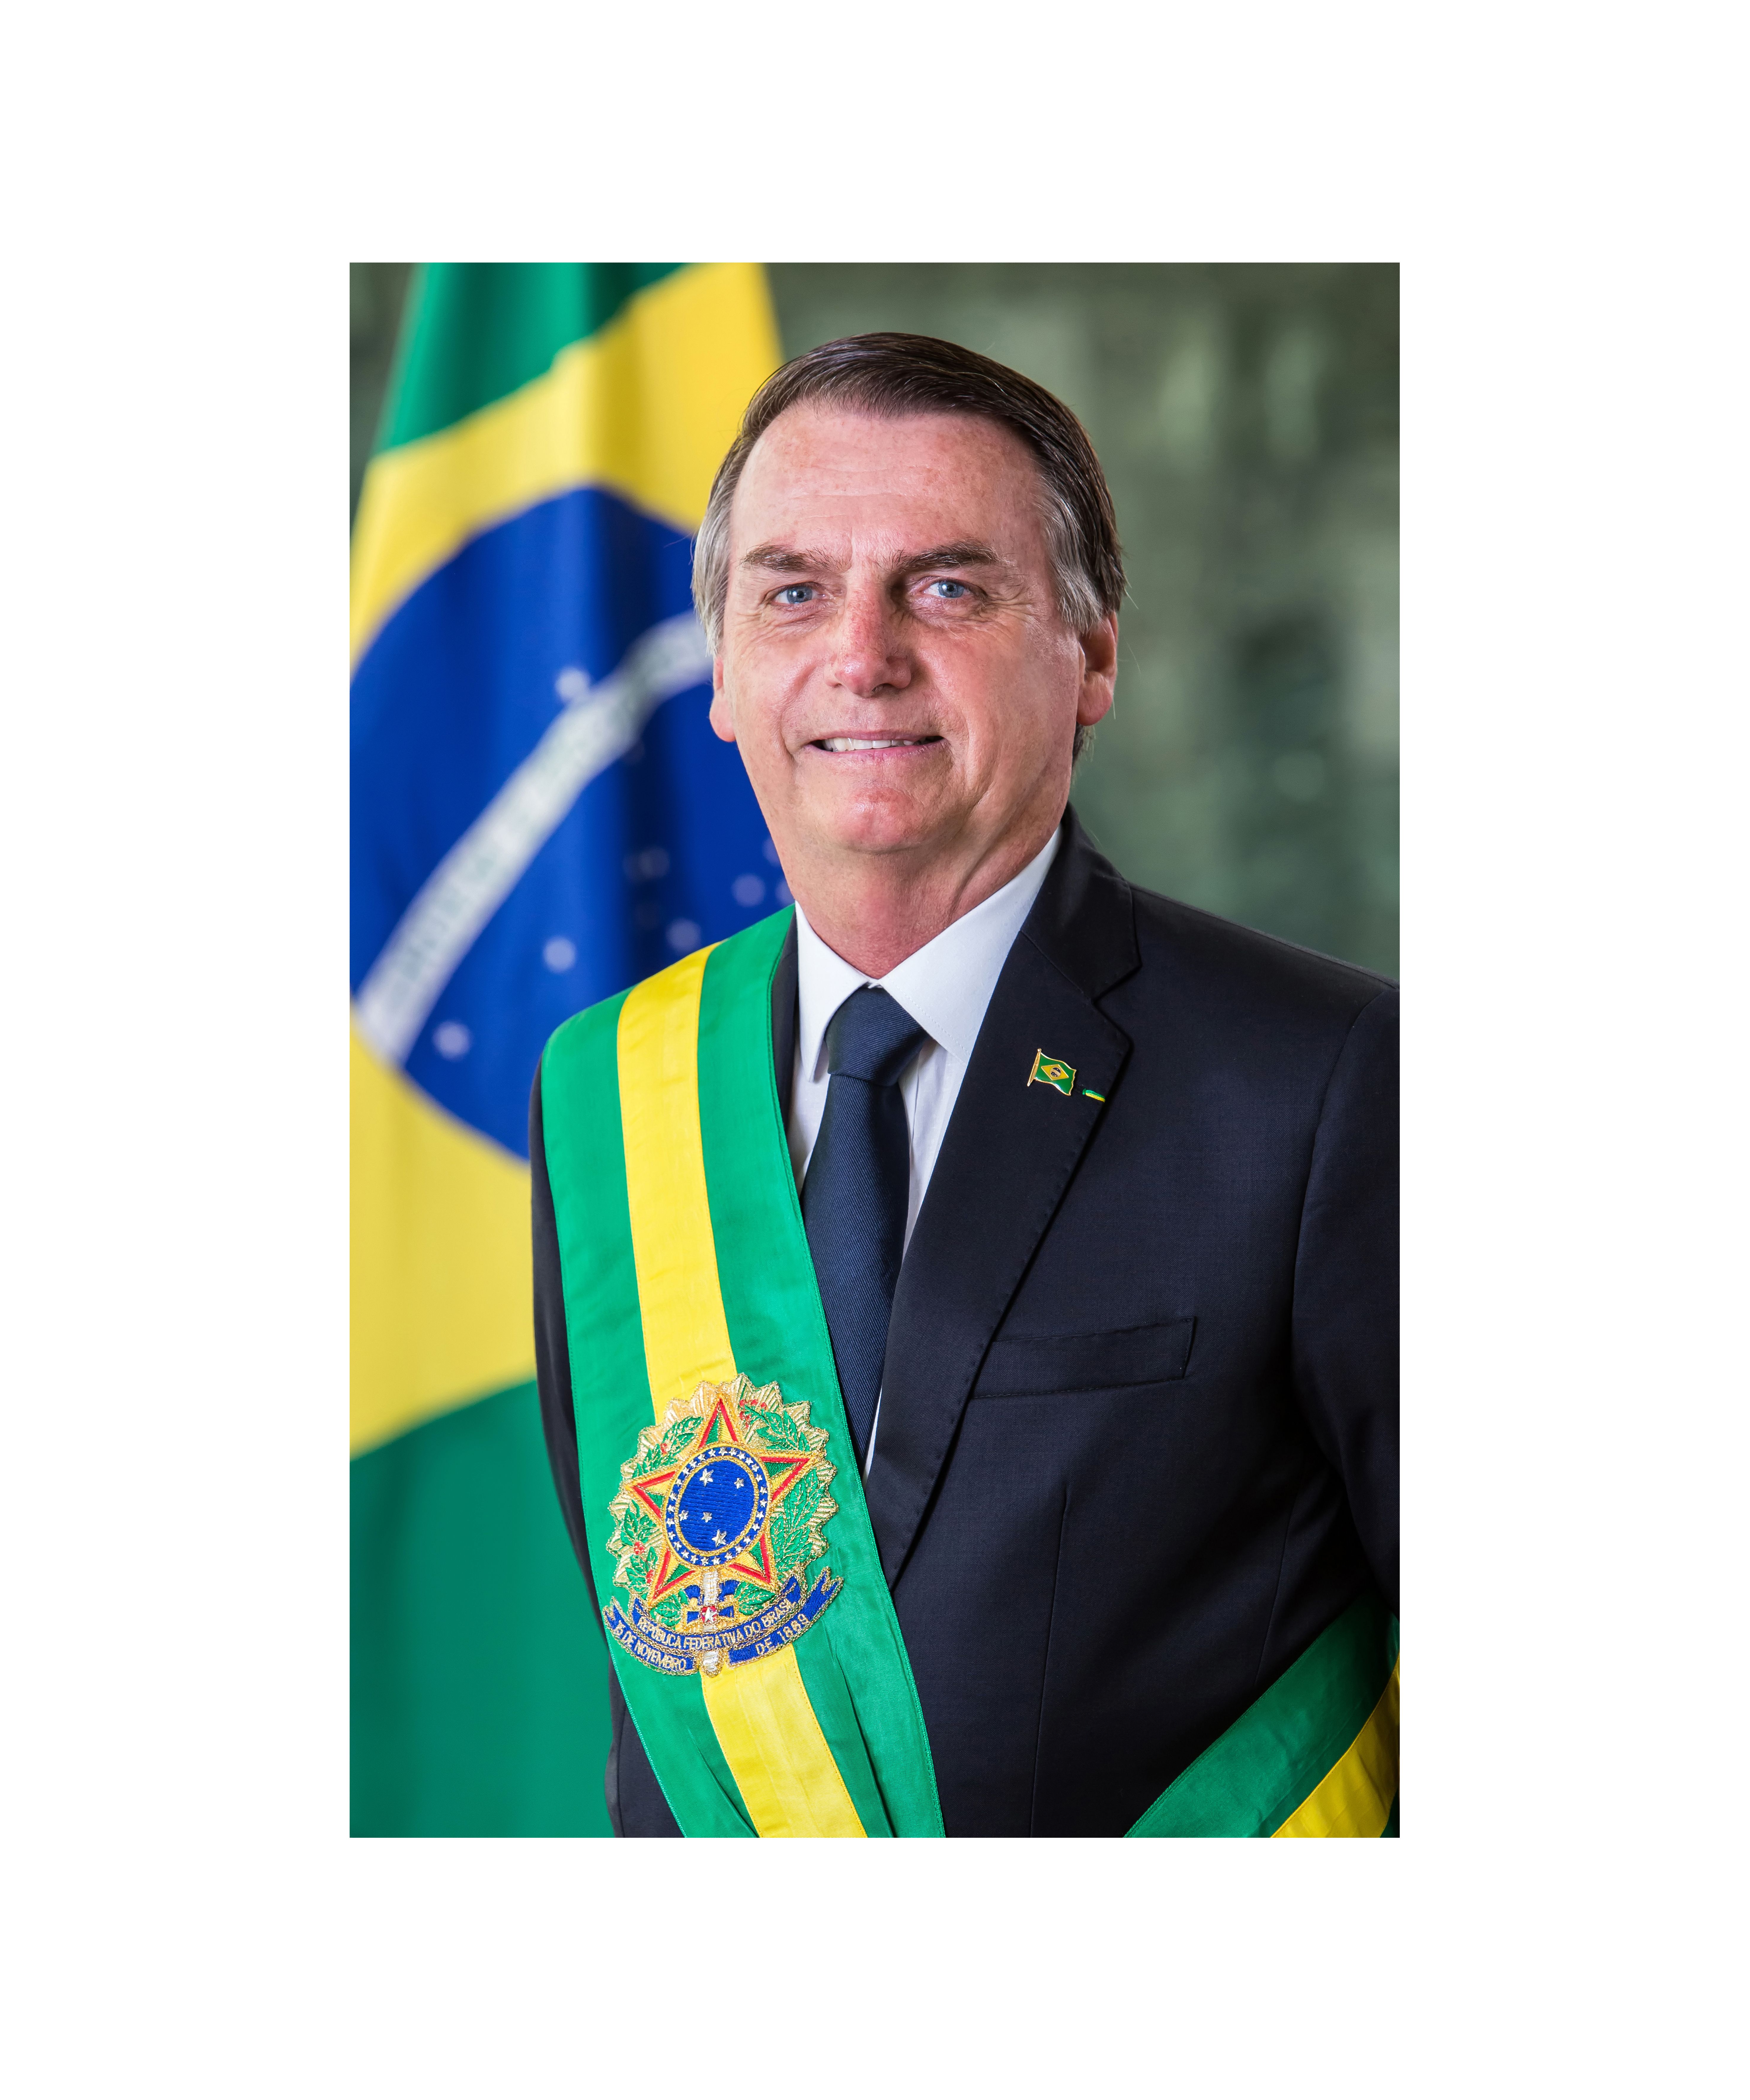 Foto oficial do presidente da República, Jair Bolsonaro